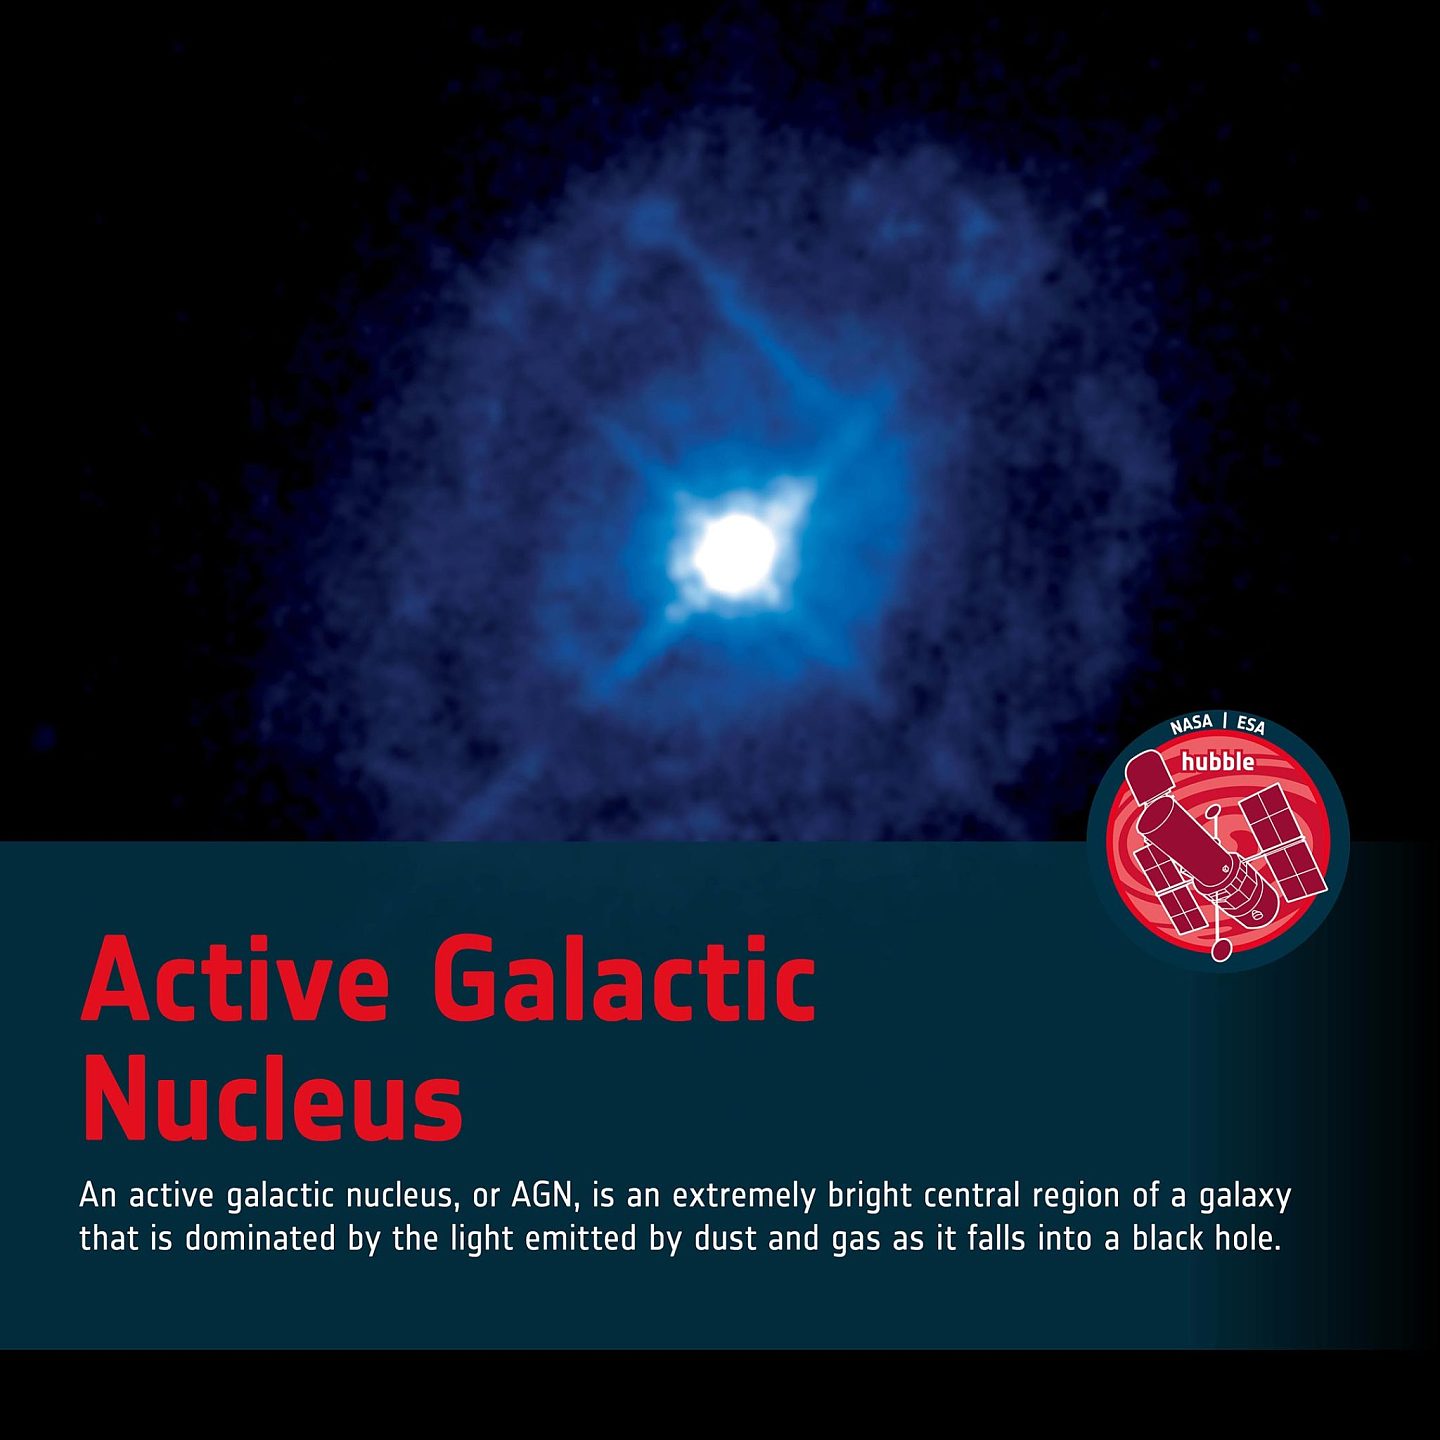 来自哈勃镜头下的Markarian 509活动星系核图像 - 2